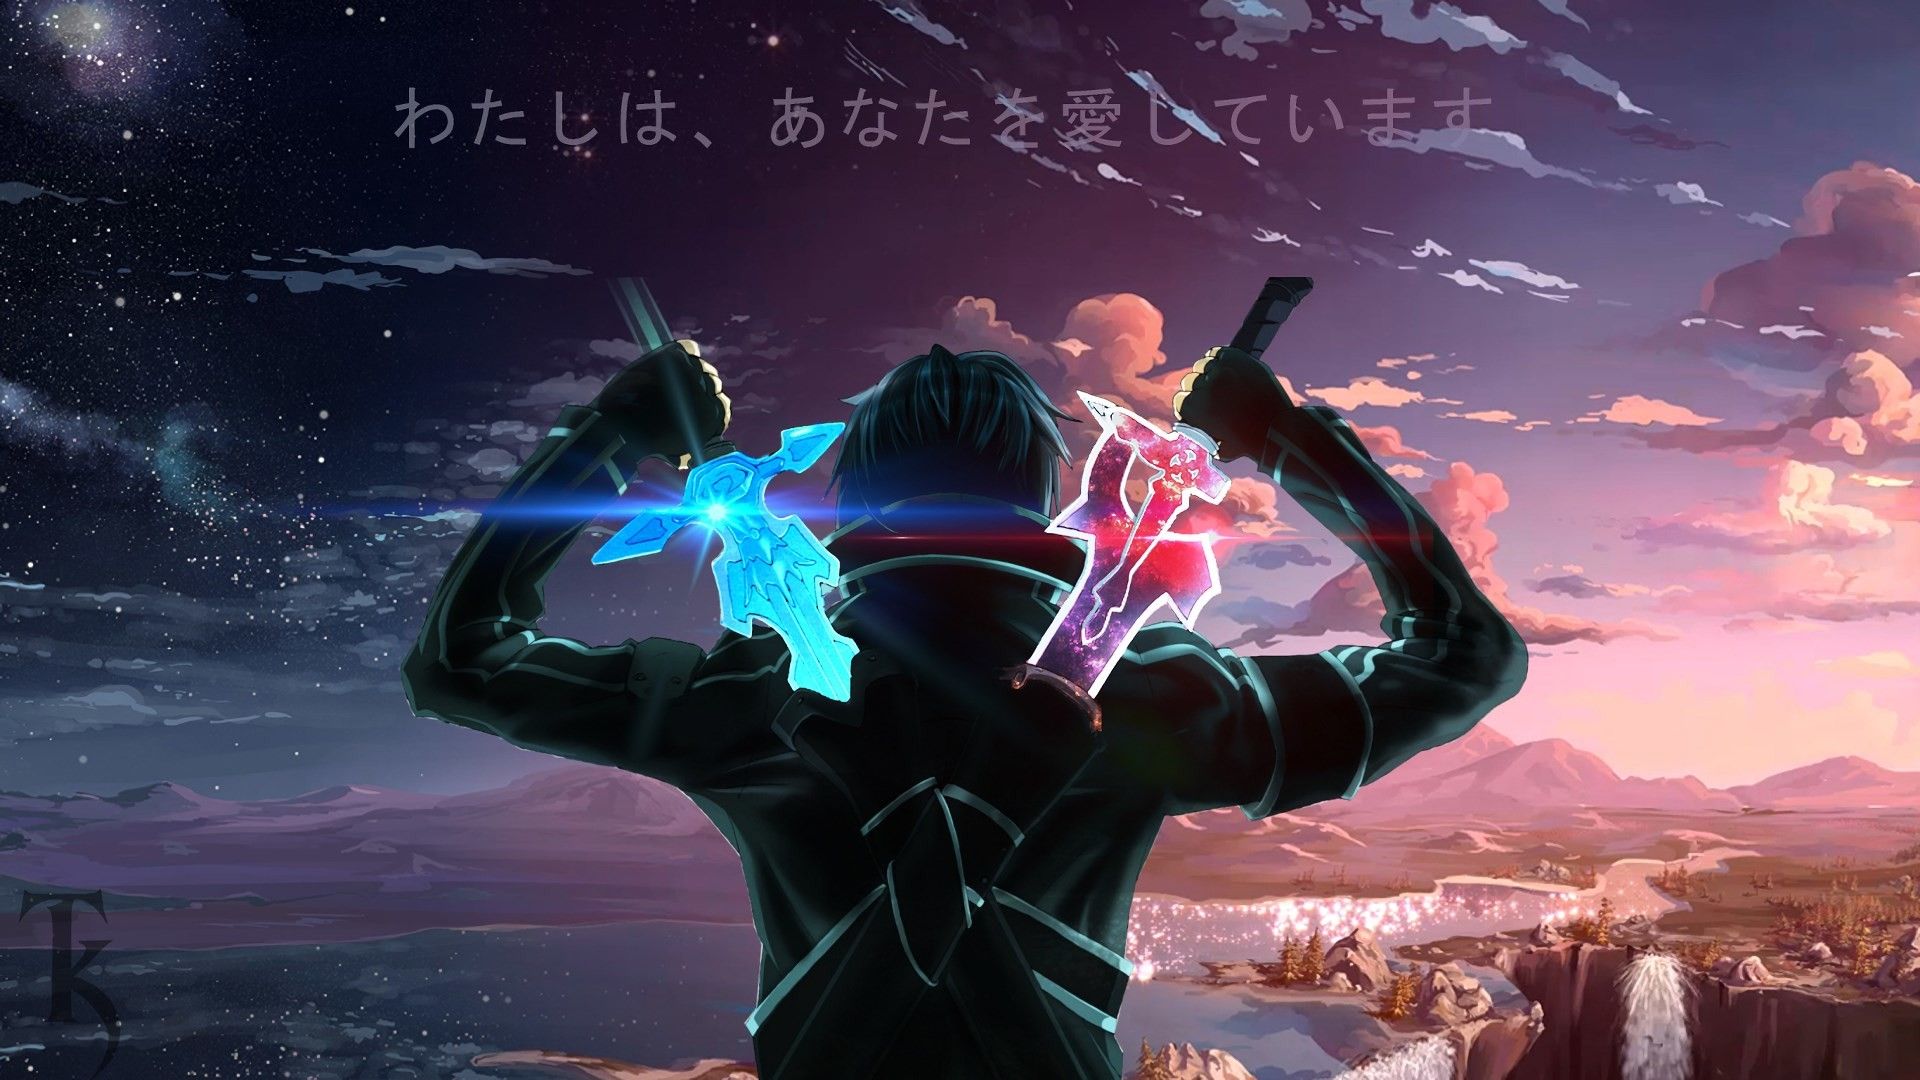 Sword Art Online Wallpaper